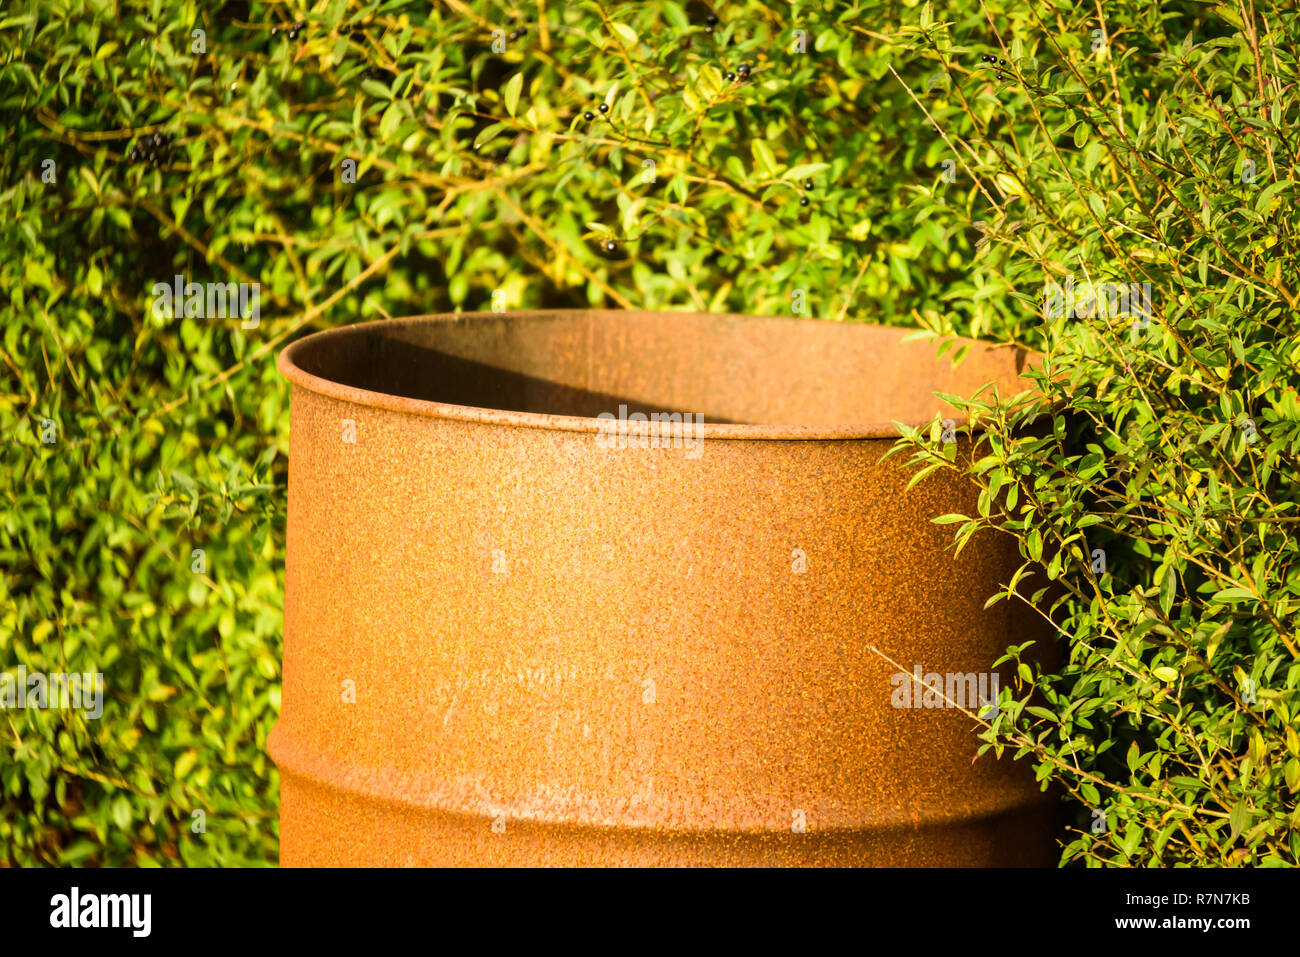 Rusty viejo barril de acero contra arbustos verdes. Este barril se utiliza ocasionalmente como una hoguera en un jardín para quemar las ramitas y otros de madera Foto de stock